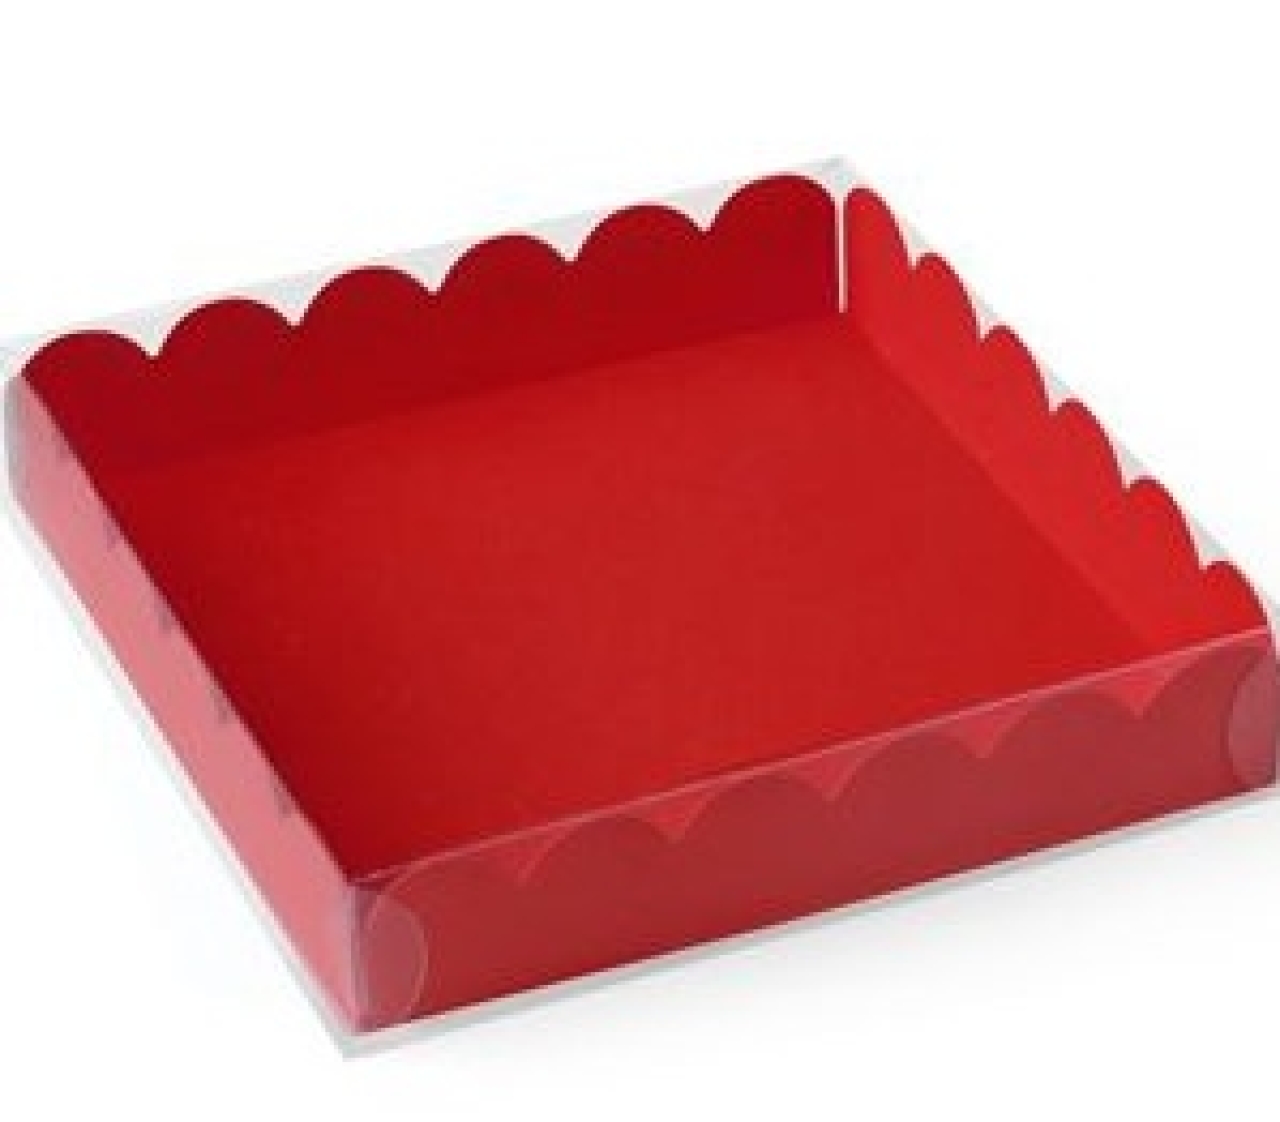 Macarons-Schachtel mit Deckel, für 9 Macarons/Kekse, rot